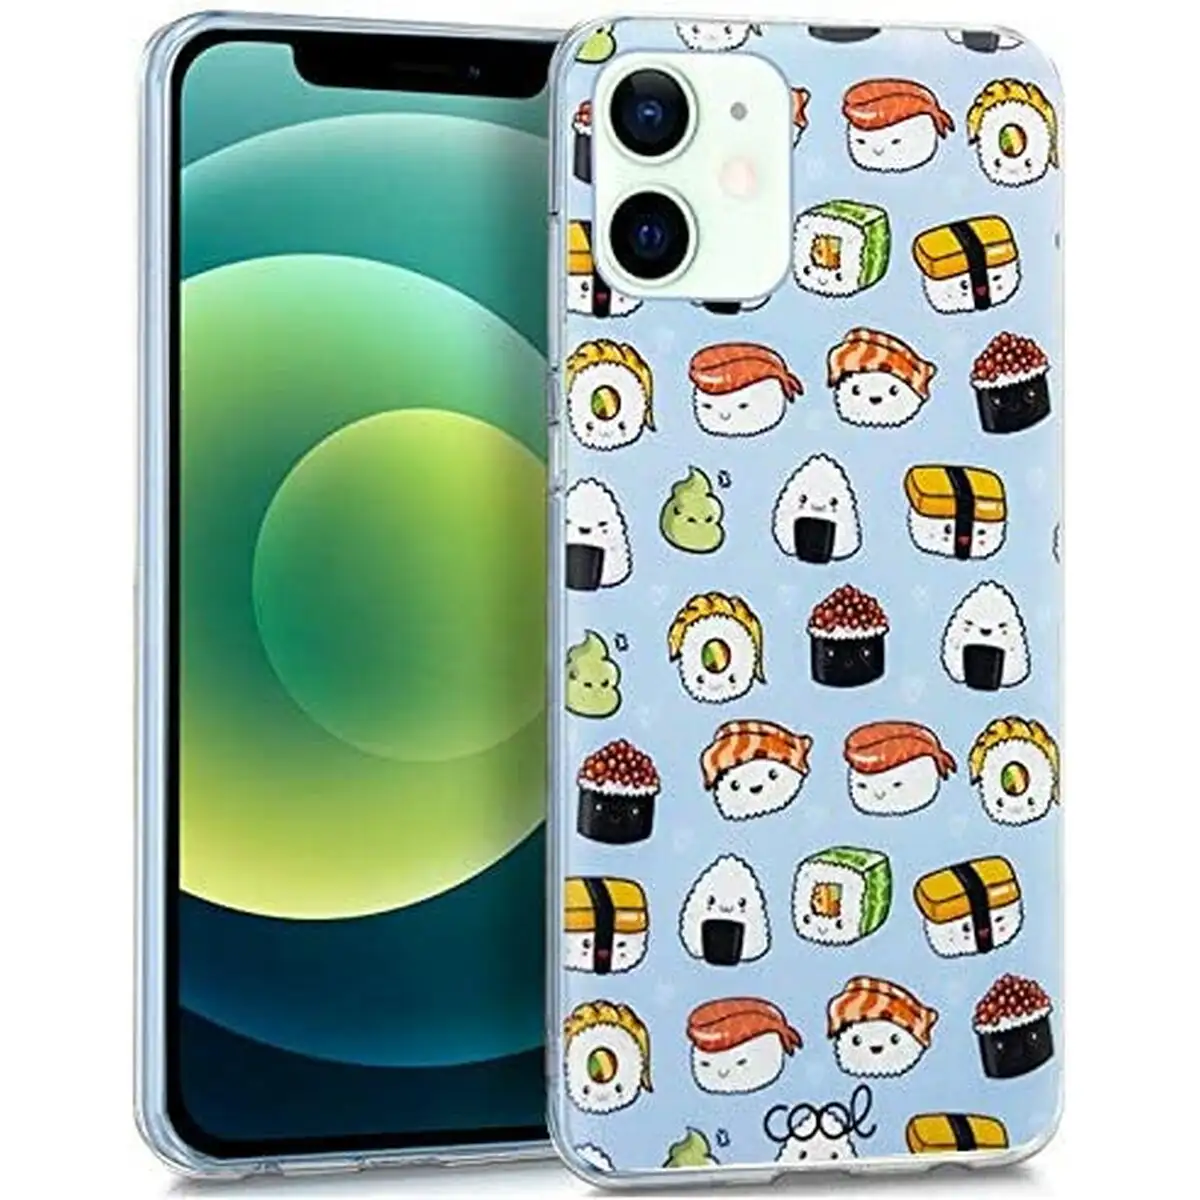 Protection pour telephone portable cool sushi iphone 12 12 pro_7001. DIAYTAR SENEGAL - Votre Passage vers l'Exceptionnel. Naviguez à travers notre sélection minutieuse et découvrez des articles qui apportent une touche spéciale à chaque instant de votre vie.